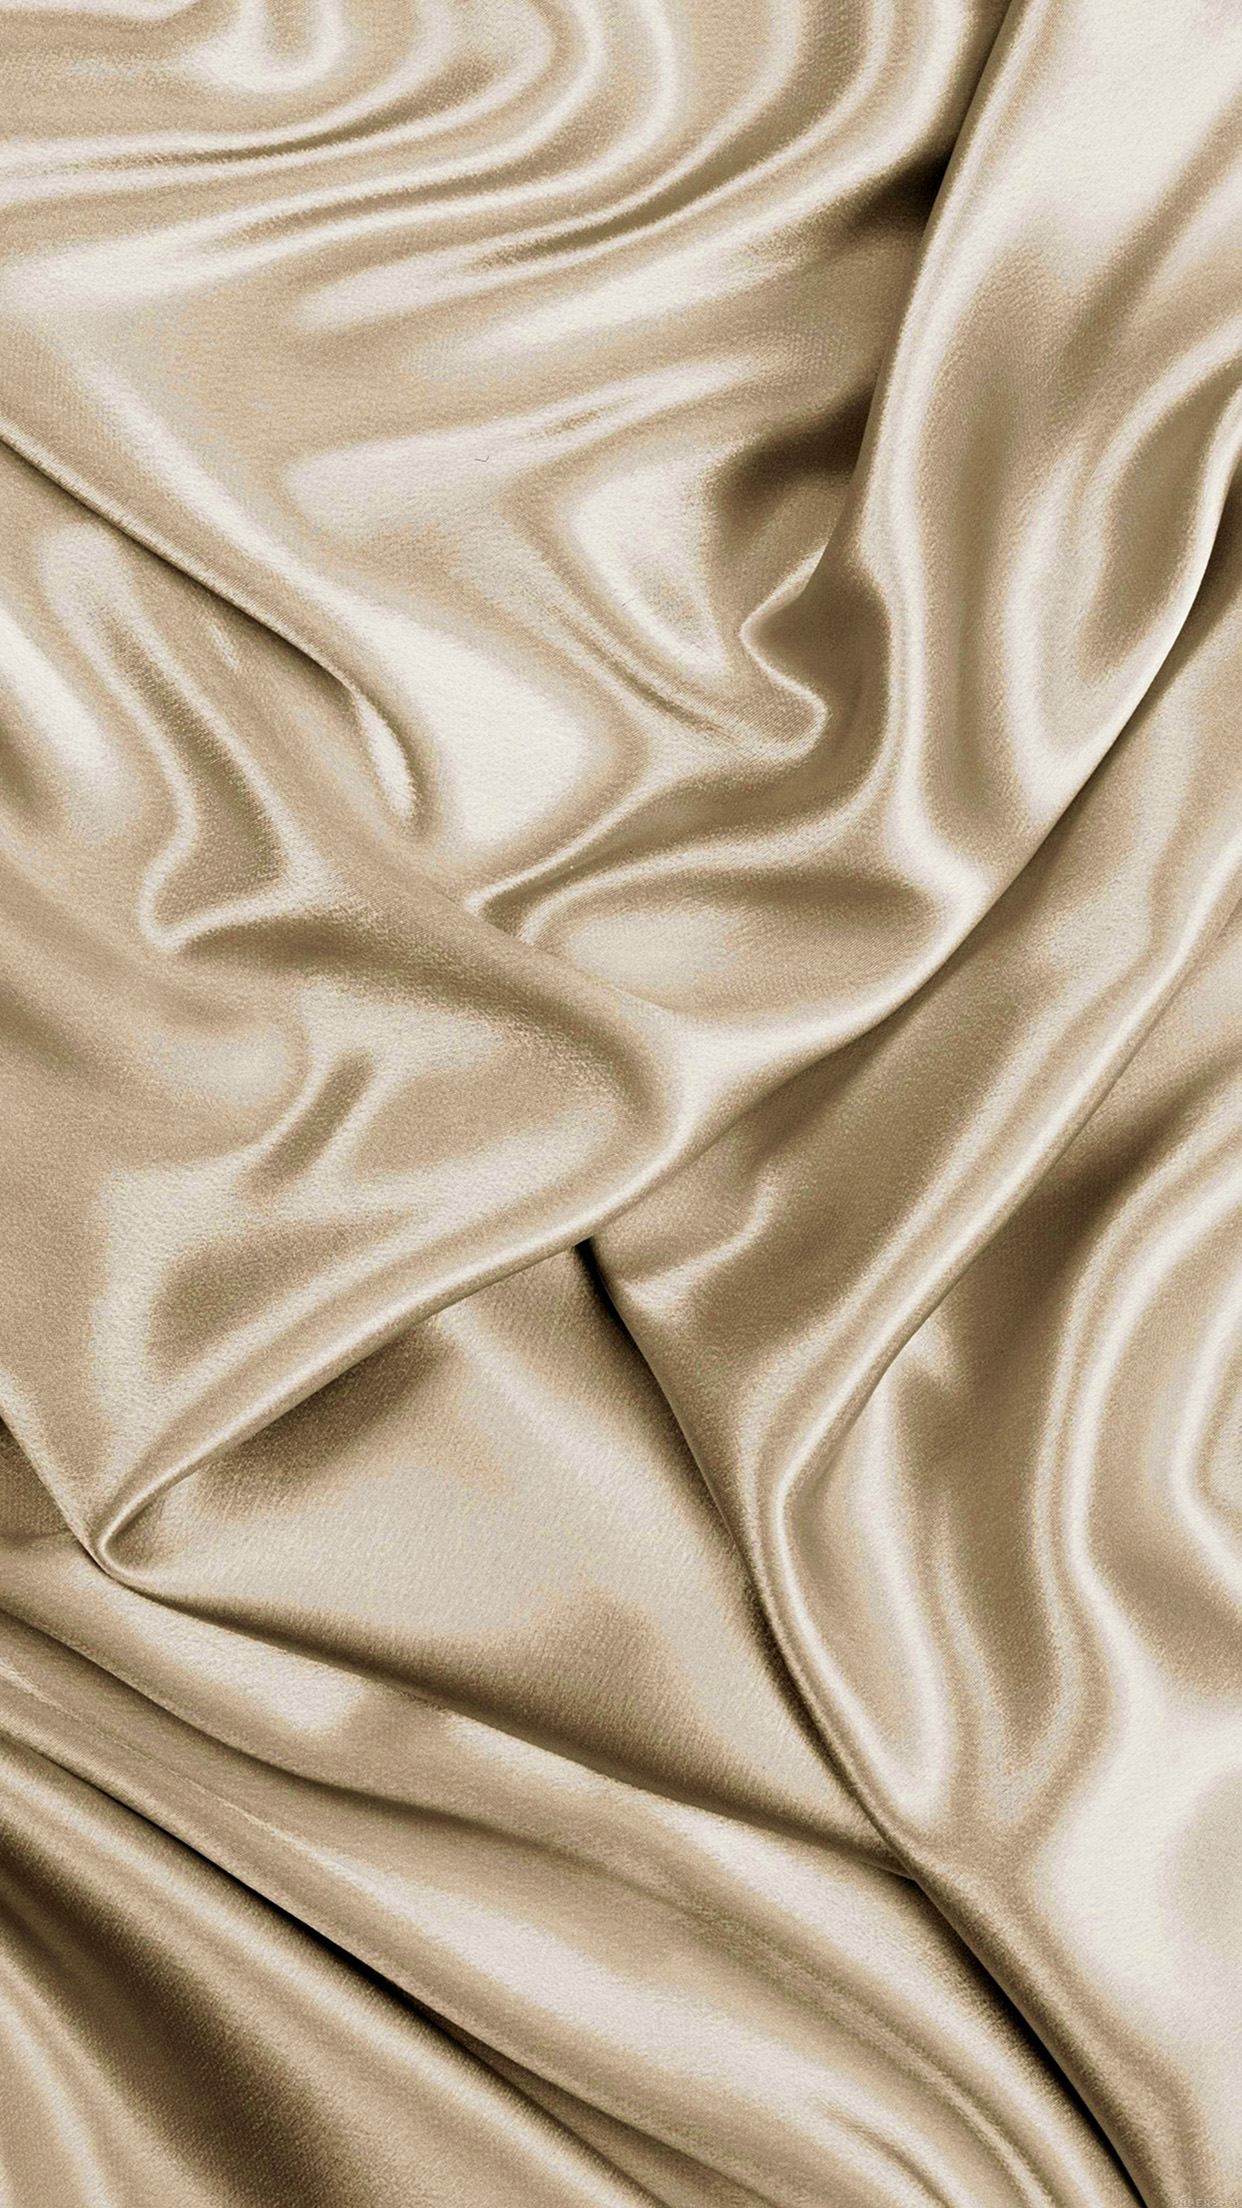 Silk Fabric Golden Soft iPhone 6 Plus HD Wallpaper